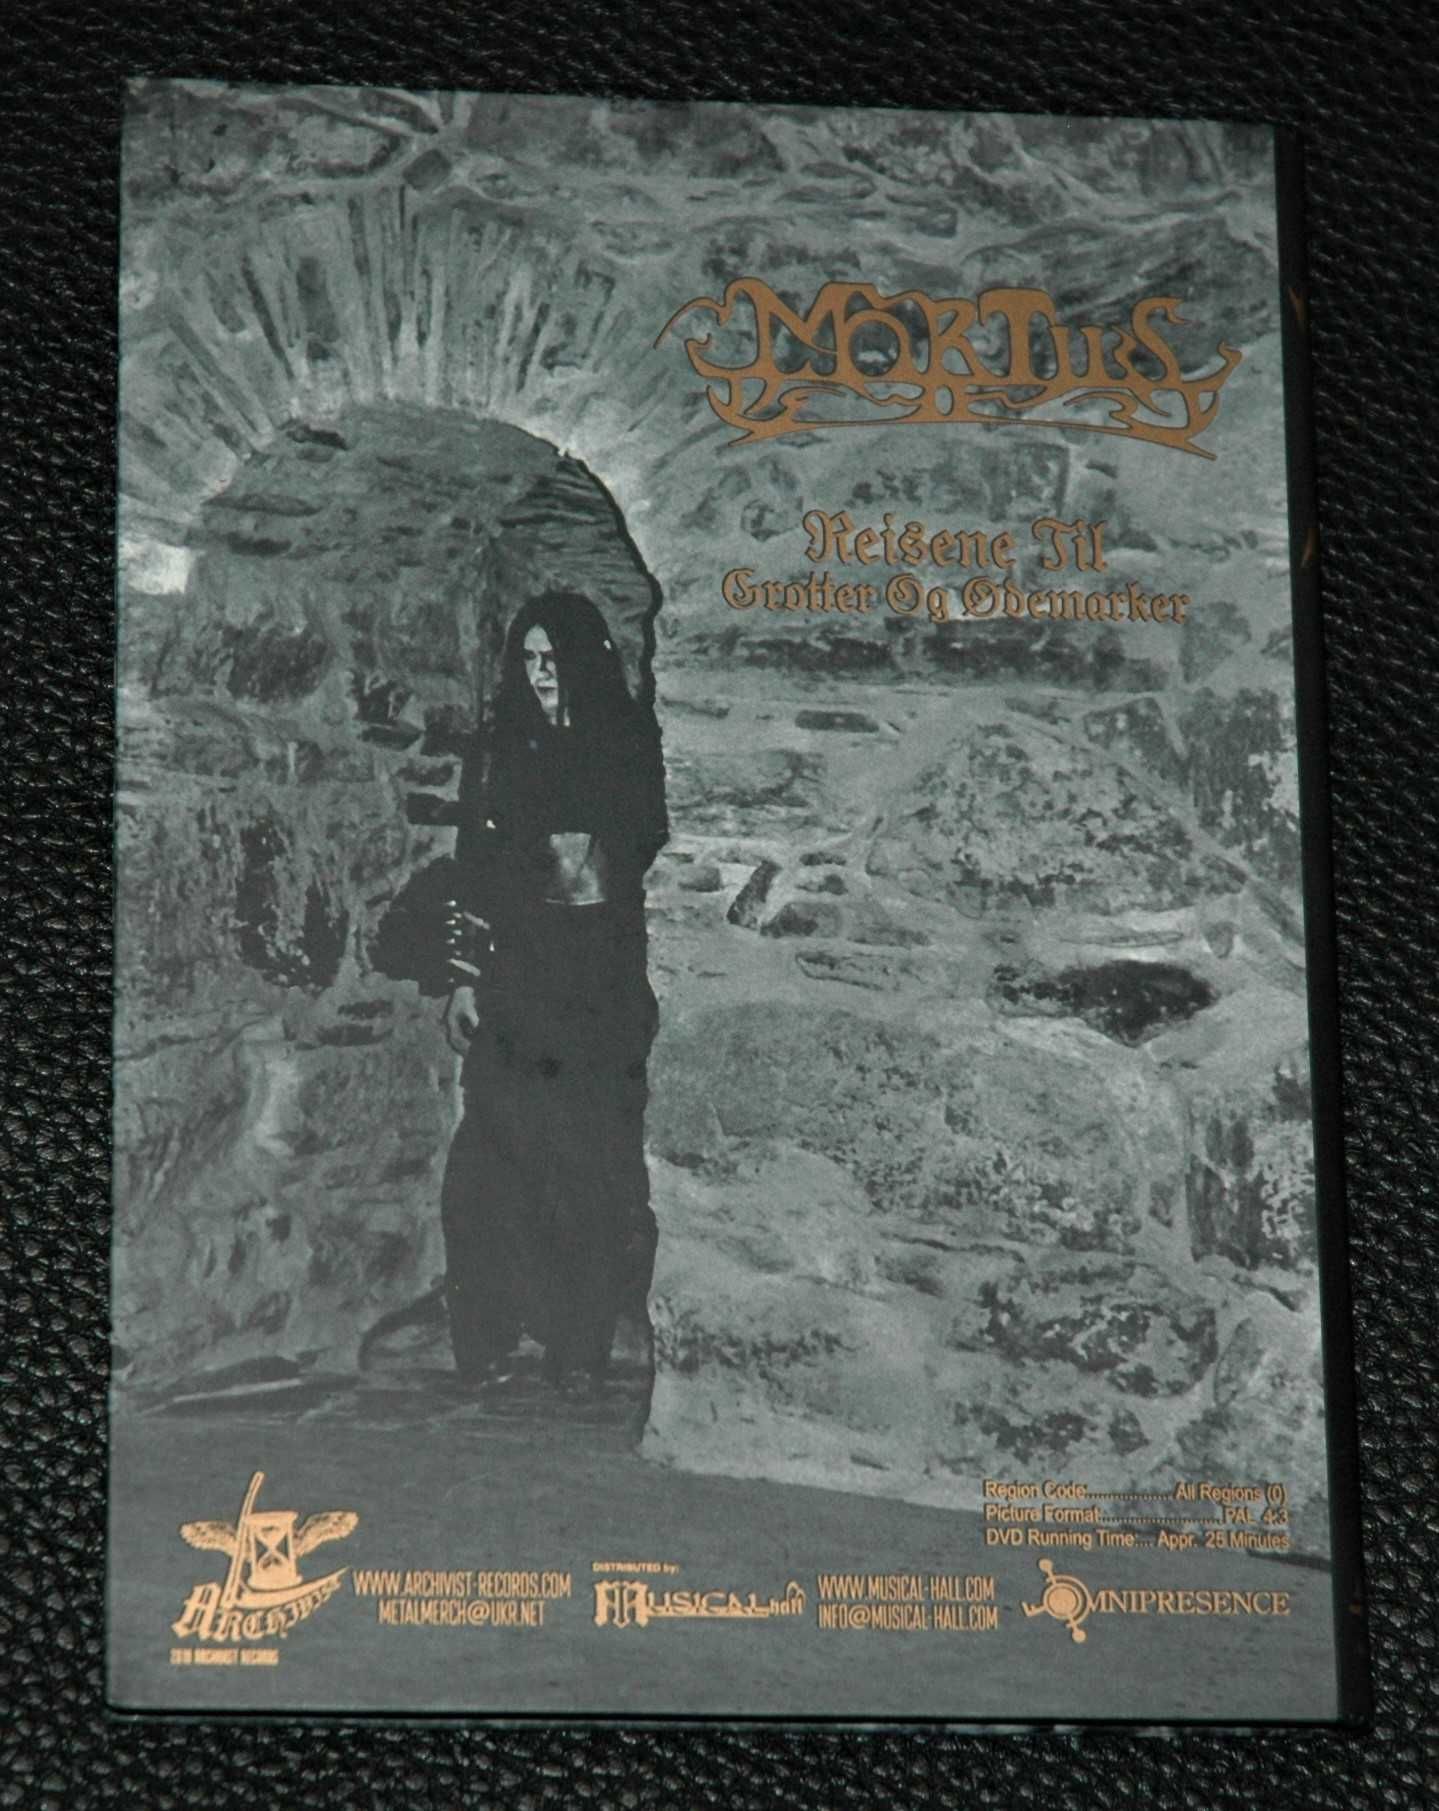 MORTIIS - Reisene Til Grotter Og Odemarker. 2018 Digibook. DVD.